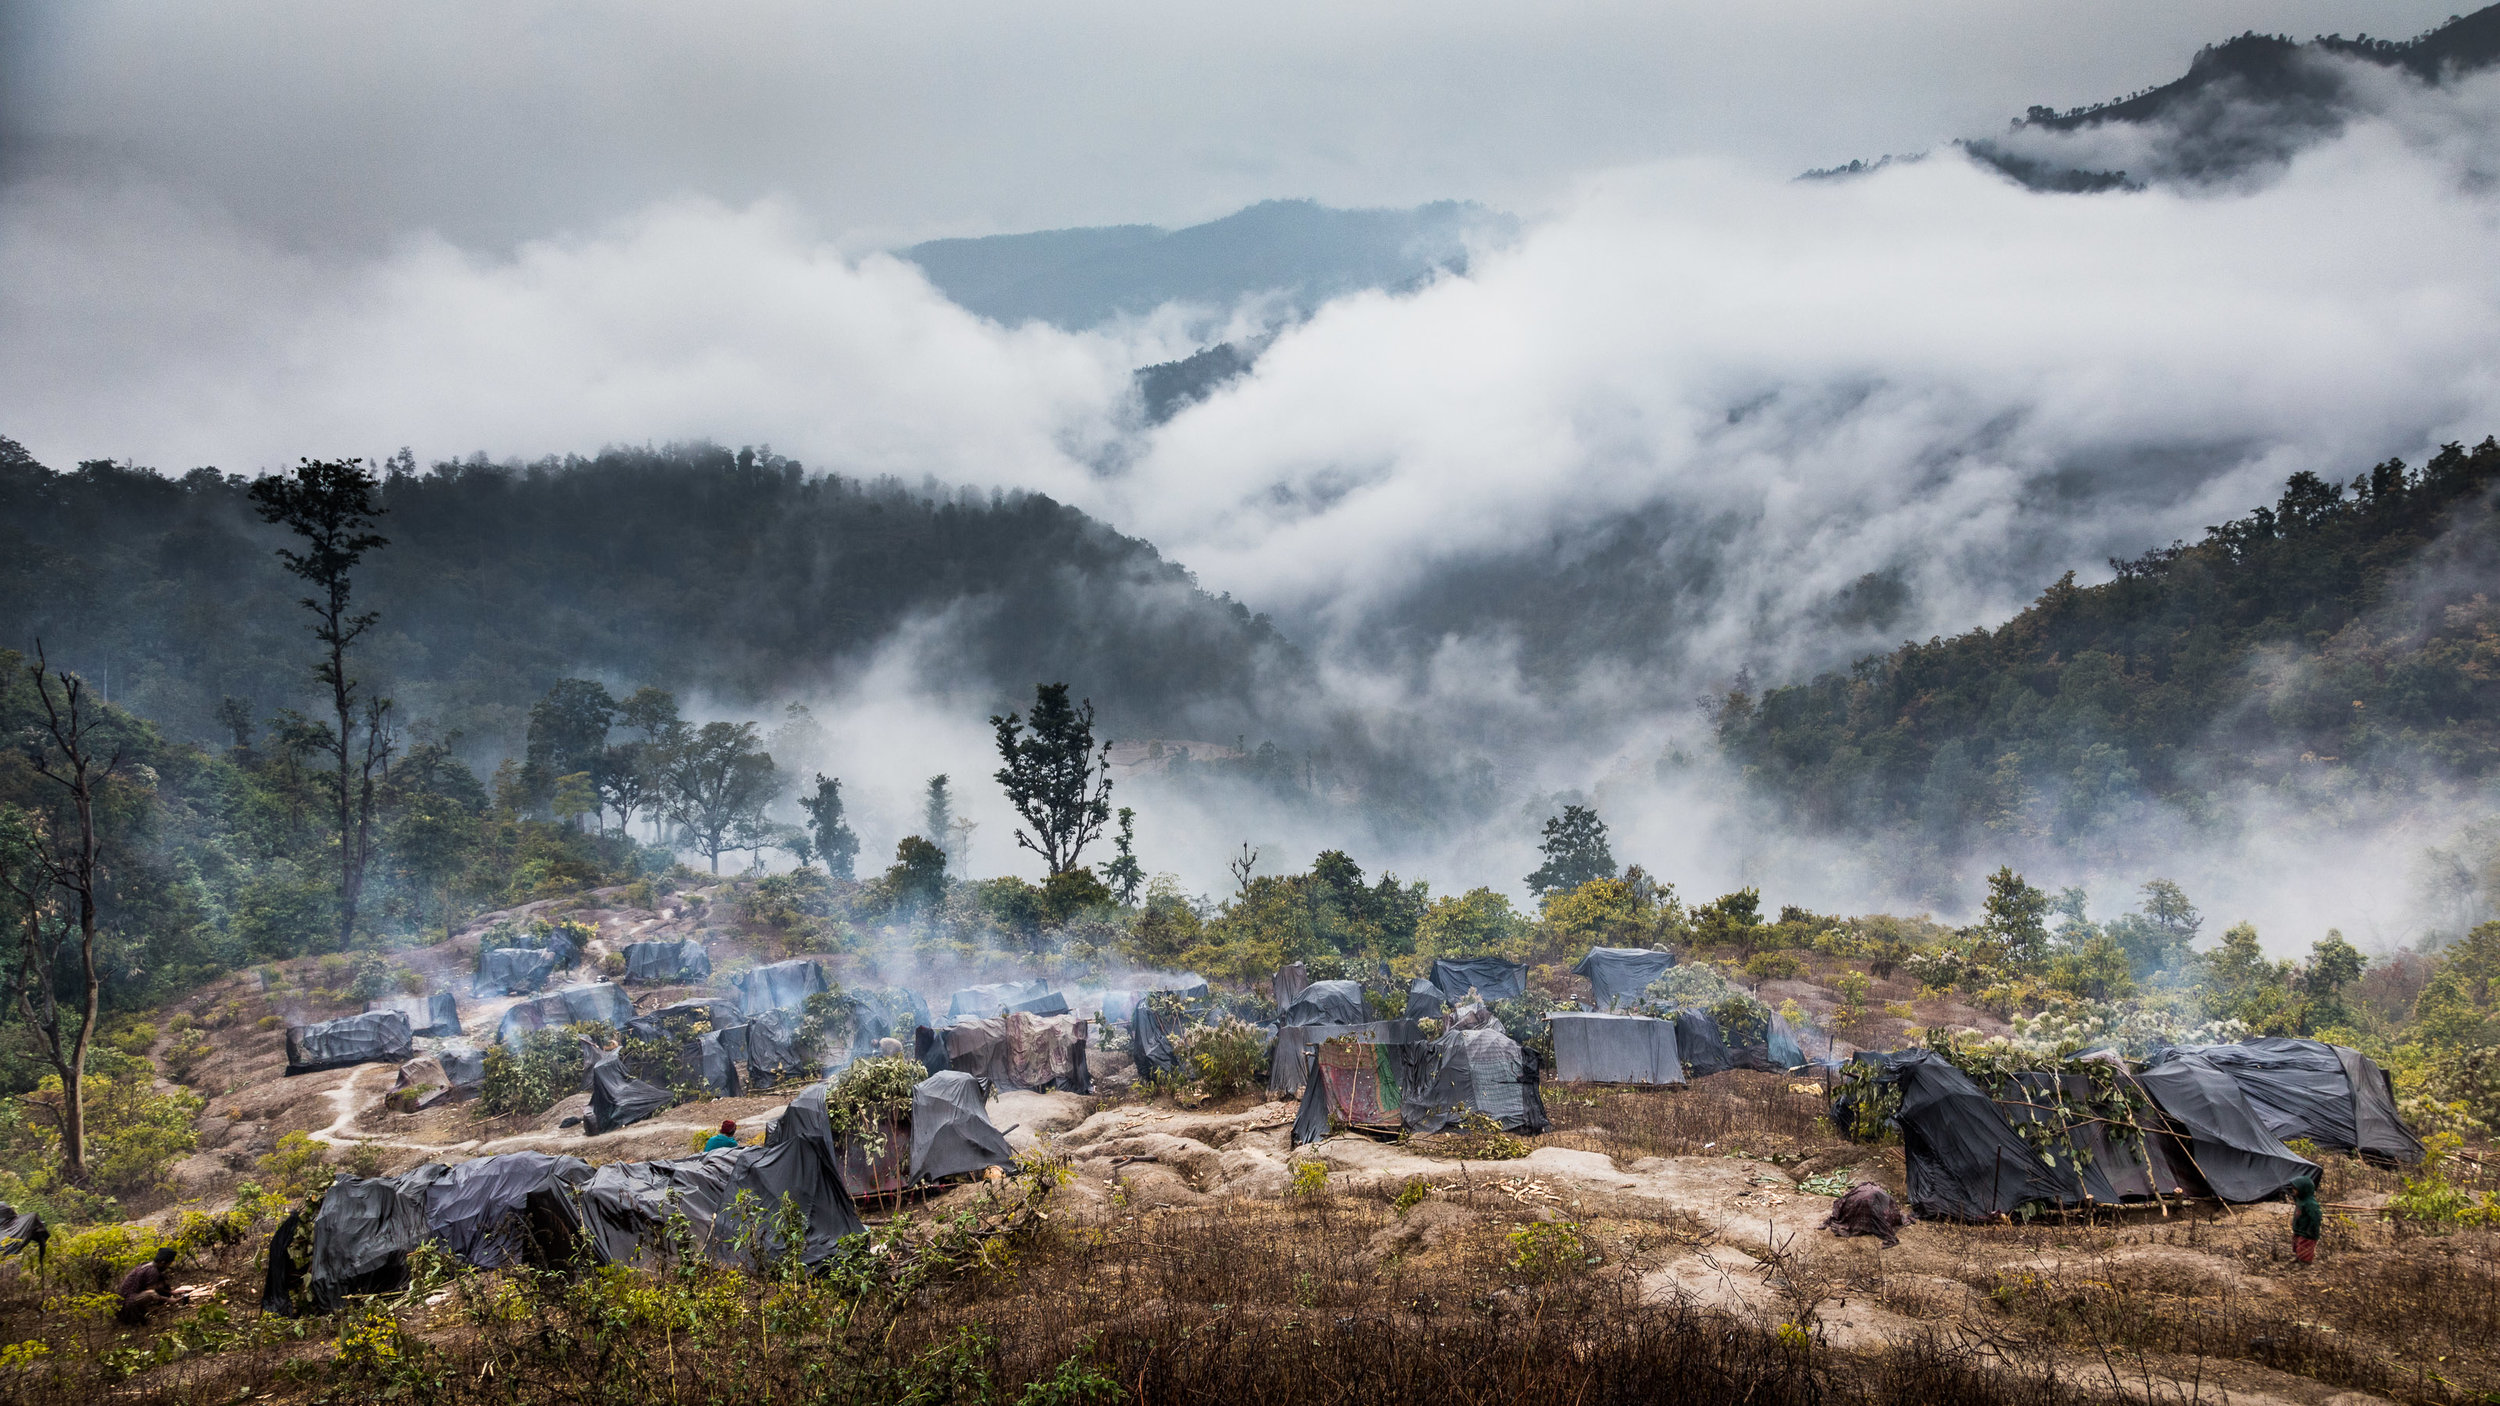   Over de Raute stam     De laatste nomaden van Nepal  